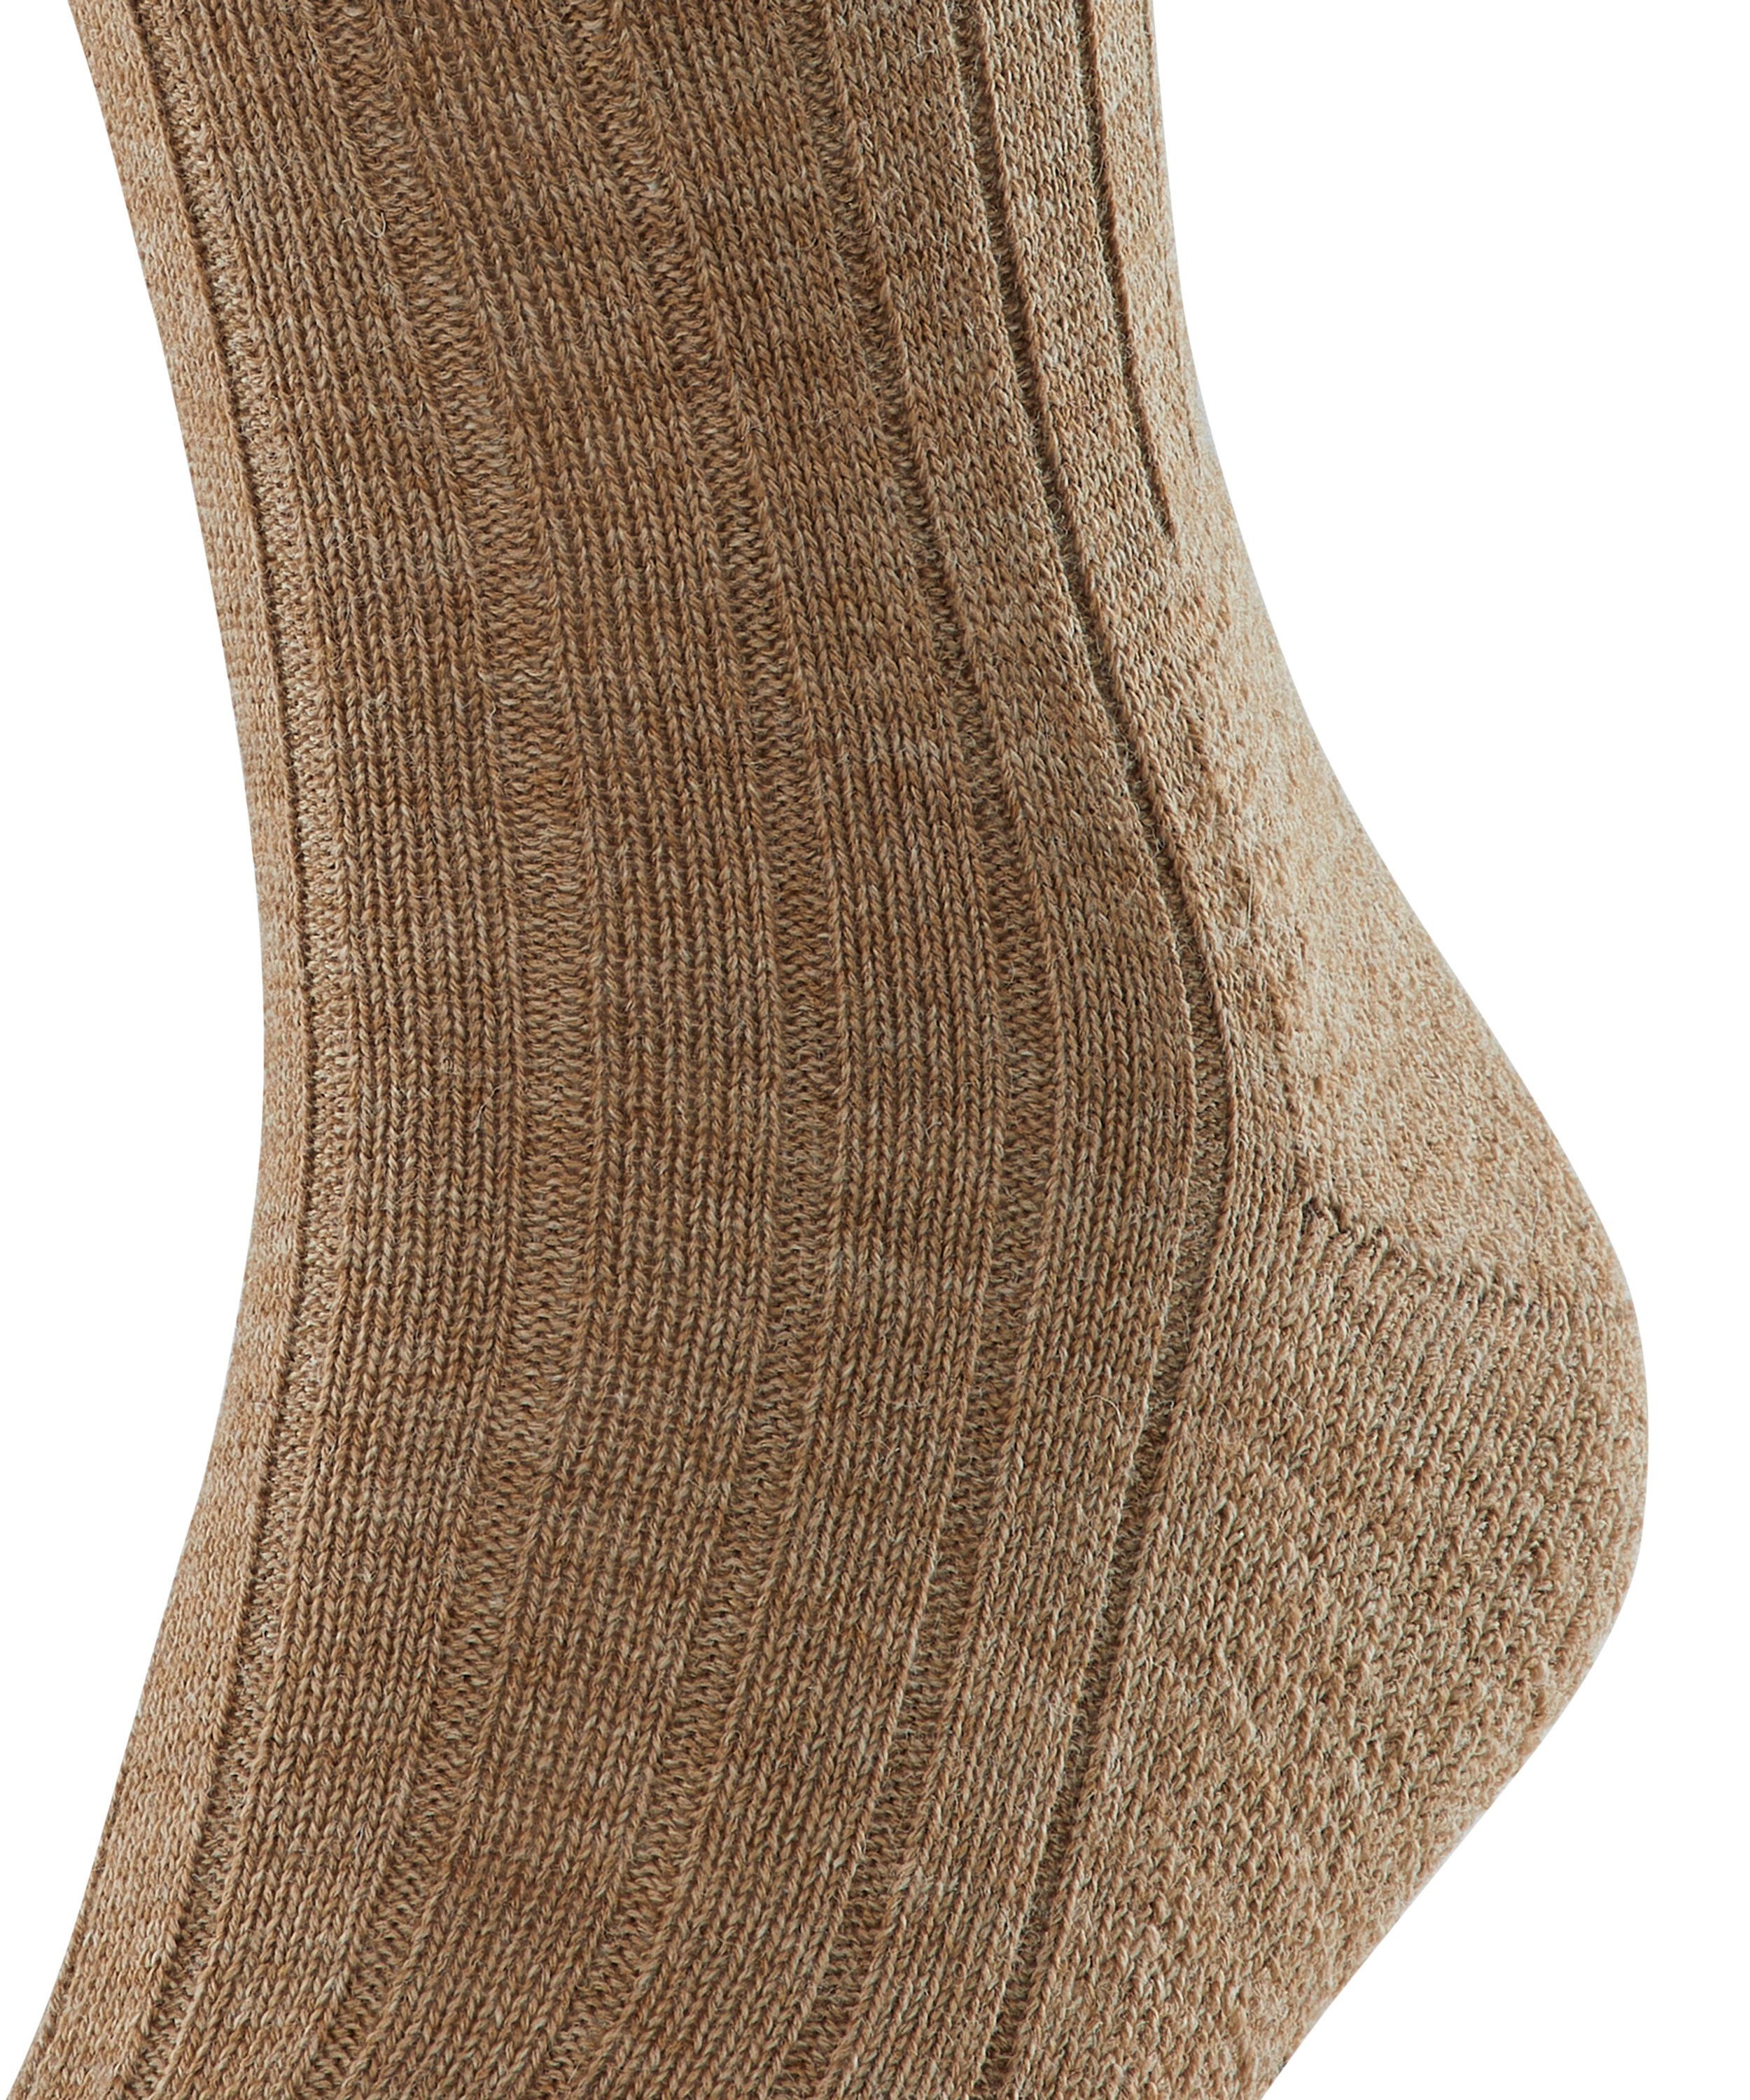 mel (5410) (1-Paar) FALKE Schuh im Teppich nutmeg Socken